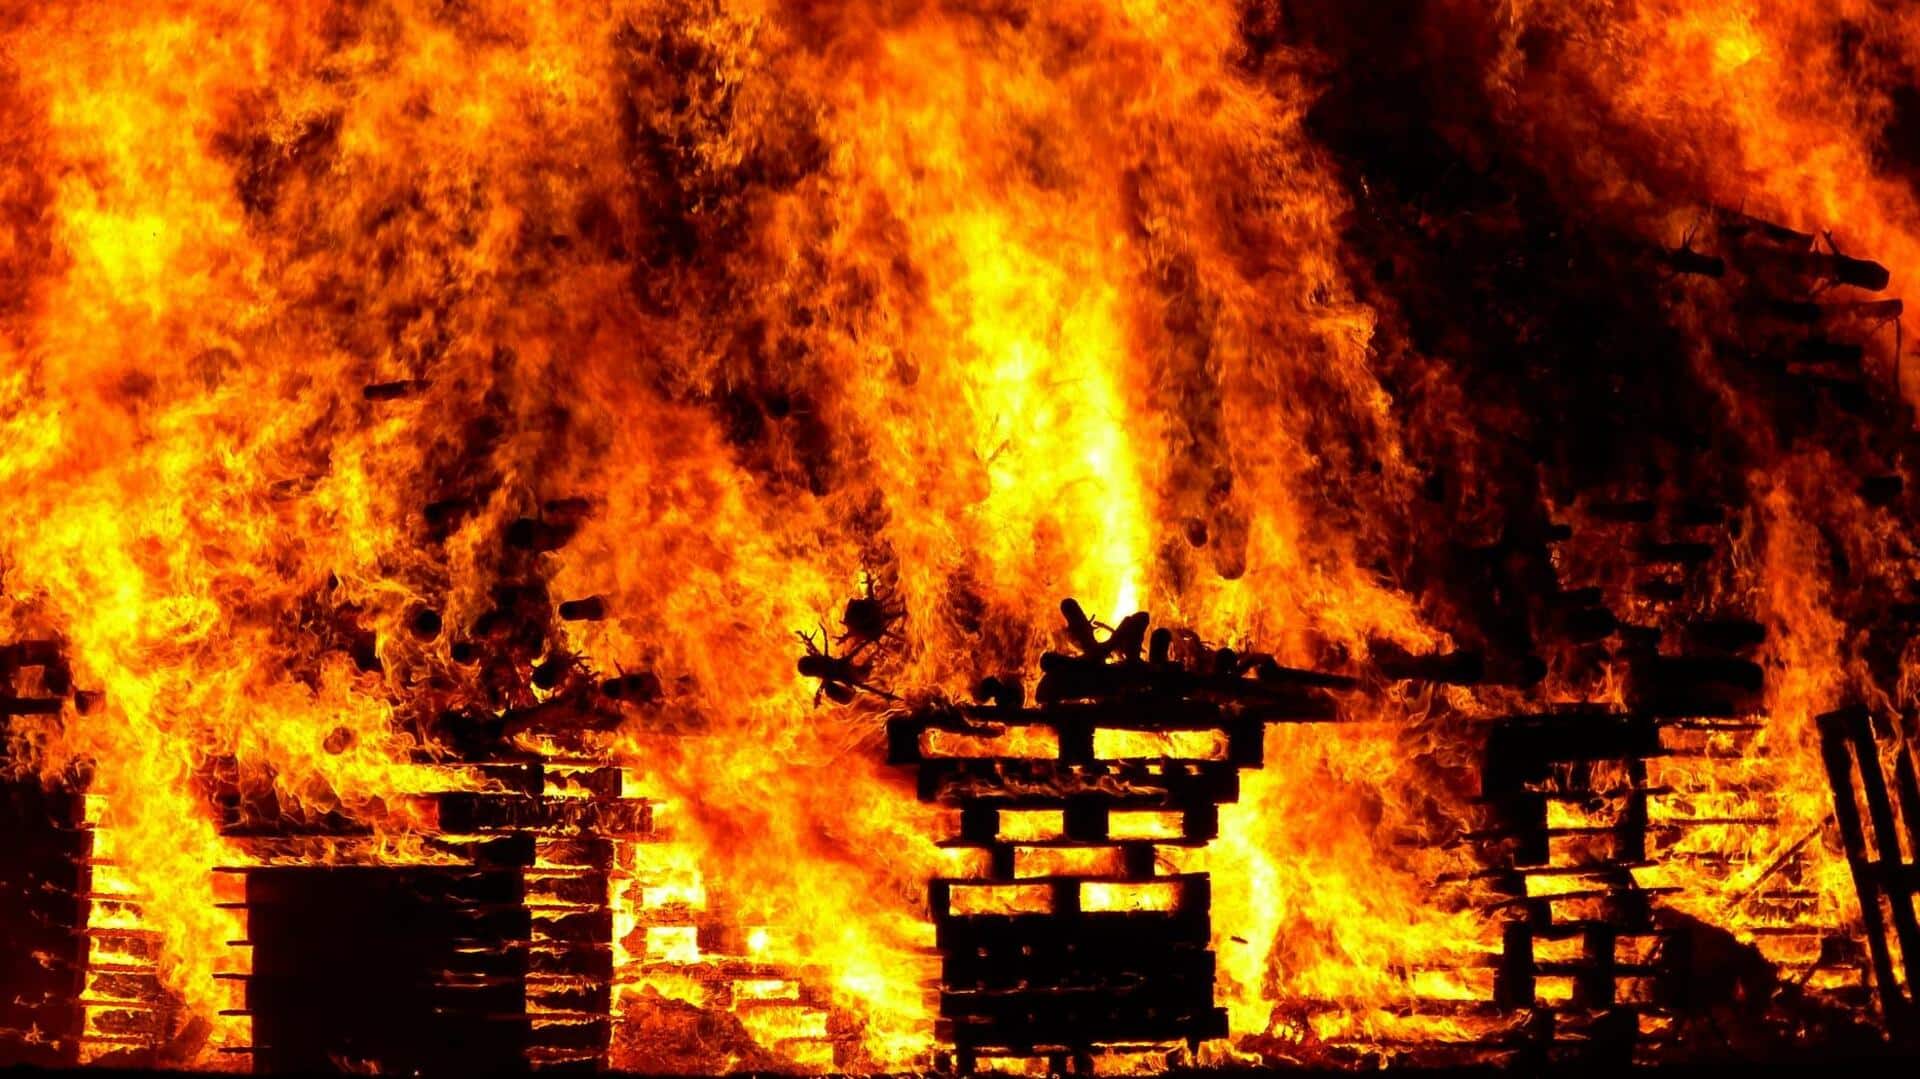 उत्तर प्रदेश: कानपुर के बासमंडी में भीषण आग से 500 दुकानें जलकर खाक